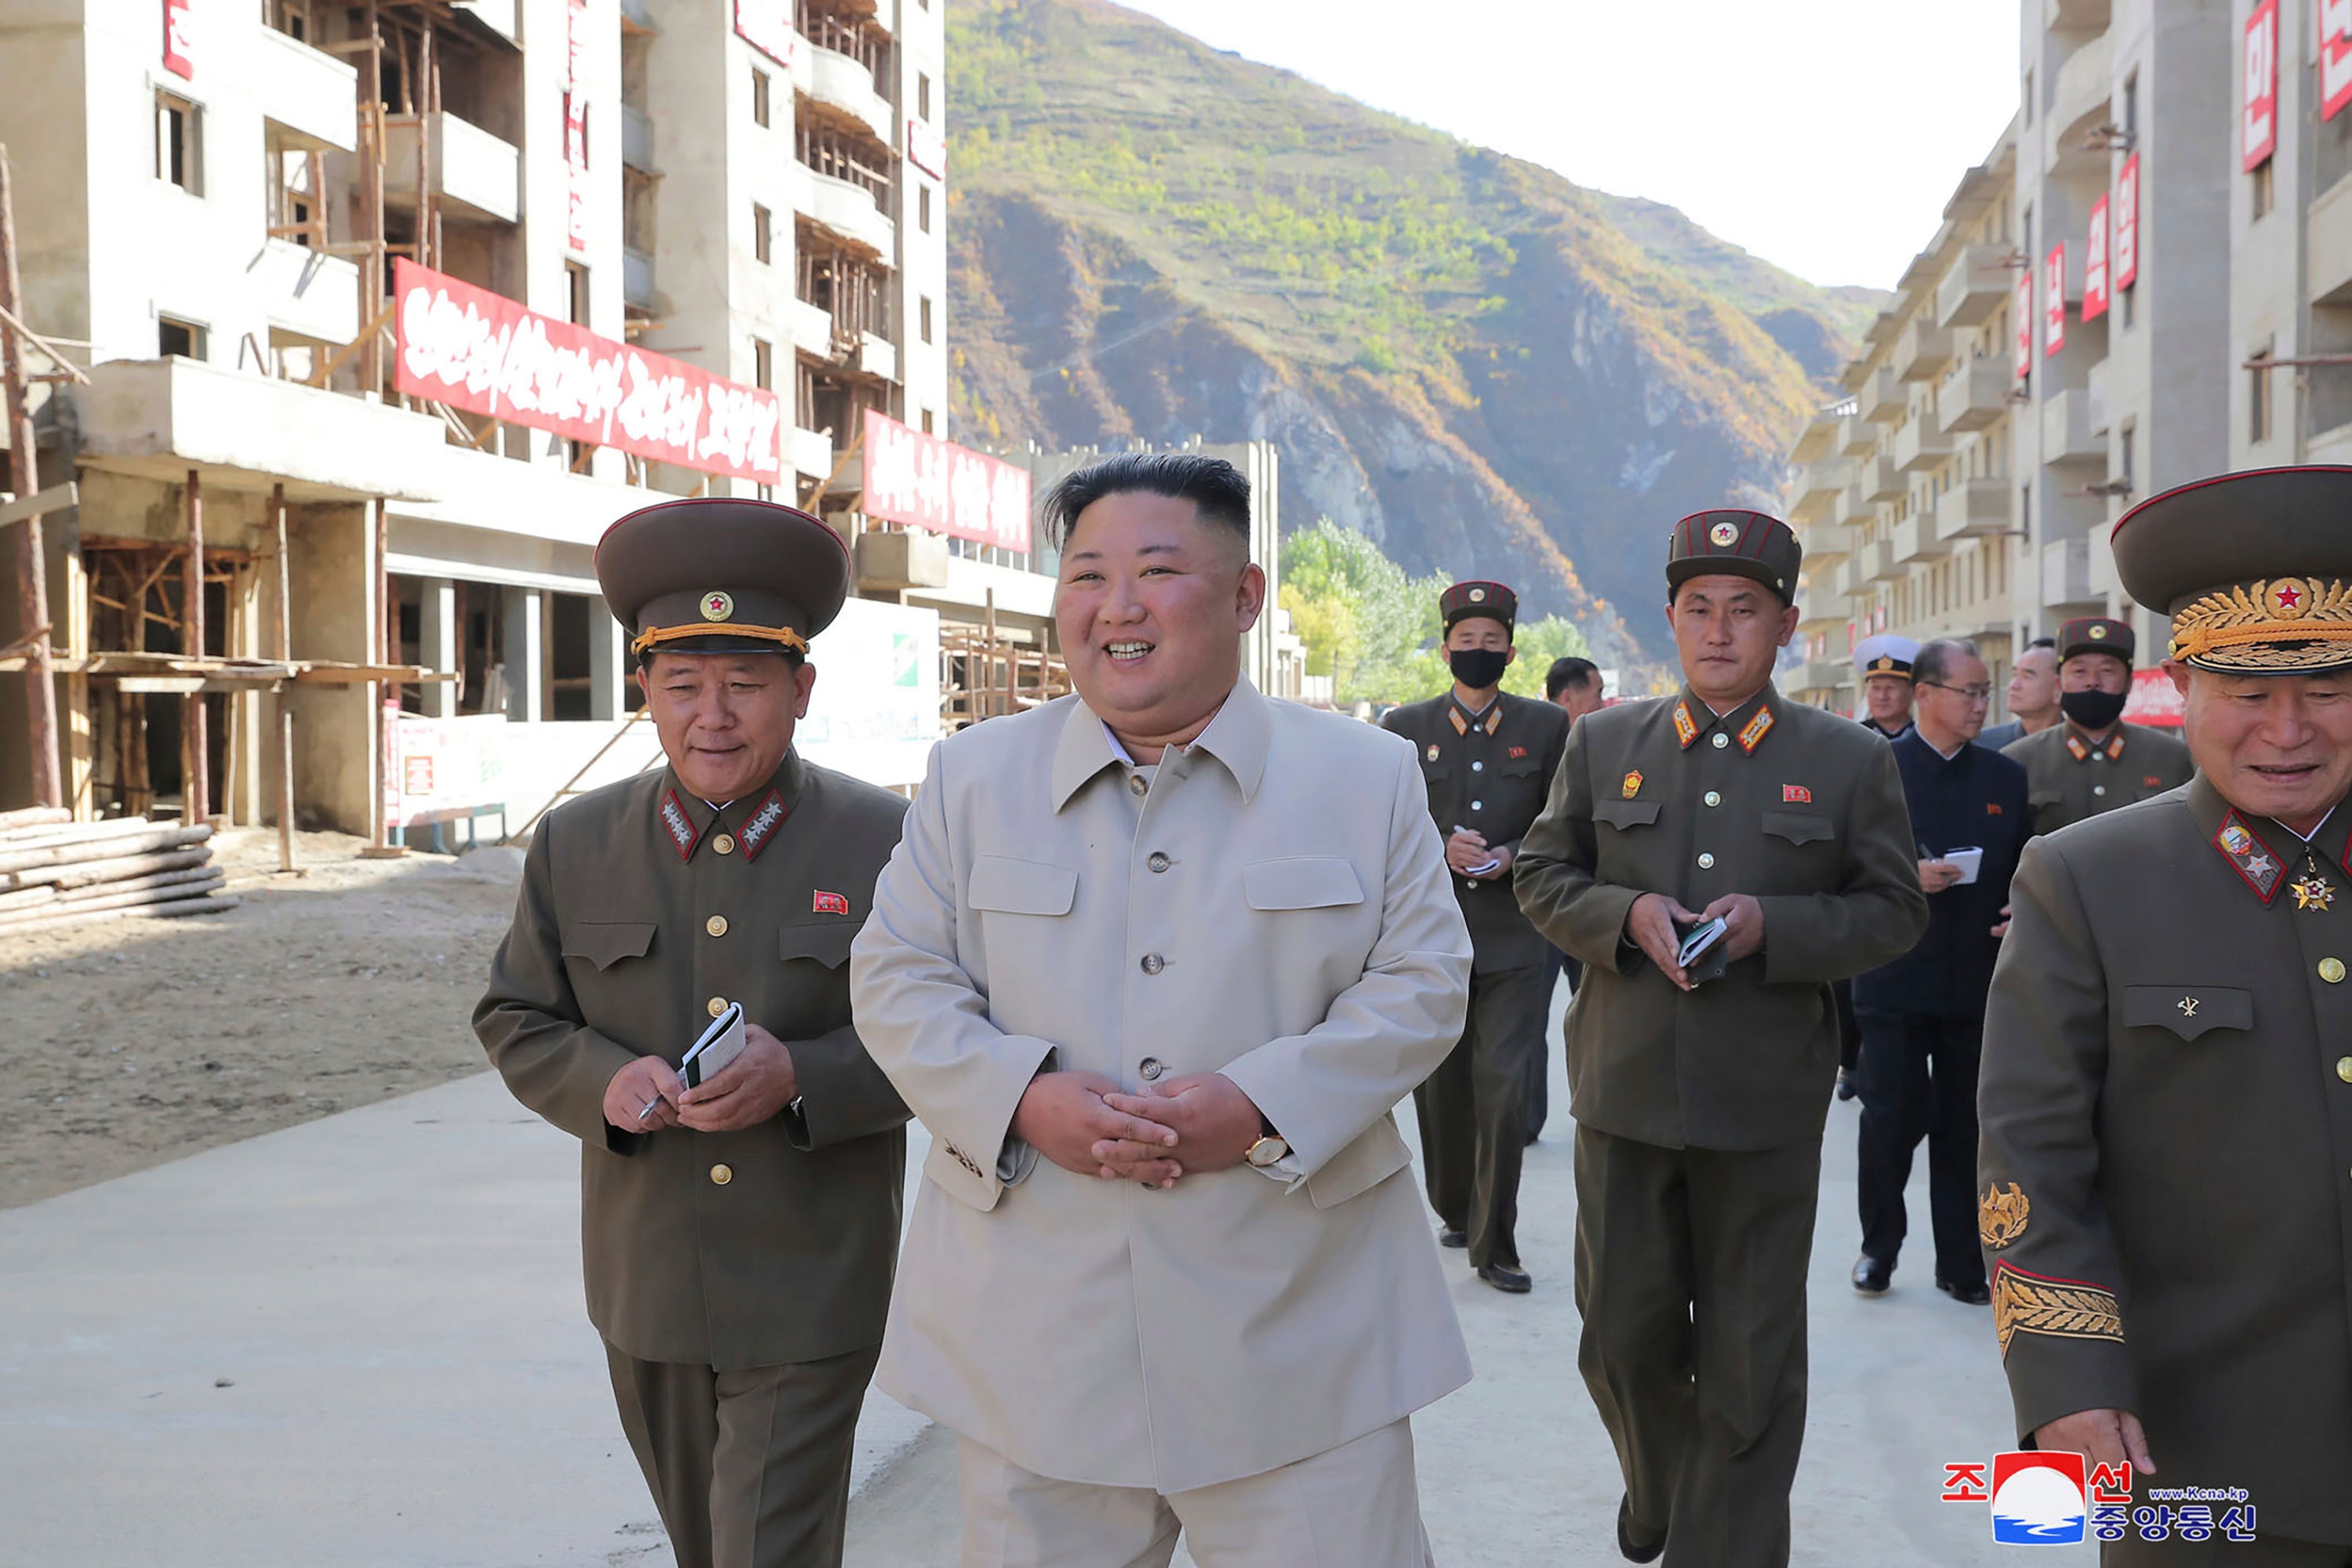 Kim Jon-un, líder supremo de la República Popular Democrática de Corea.